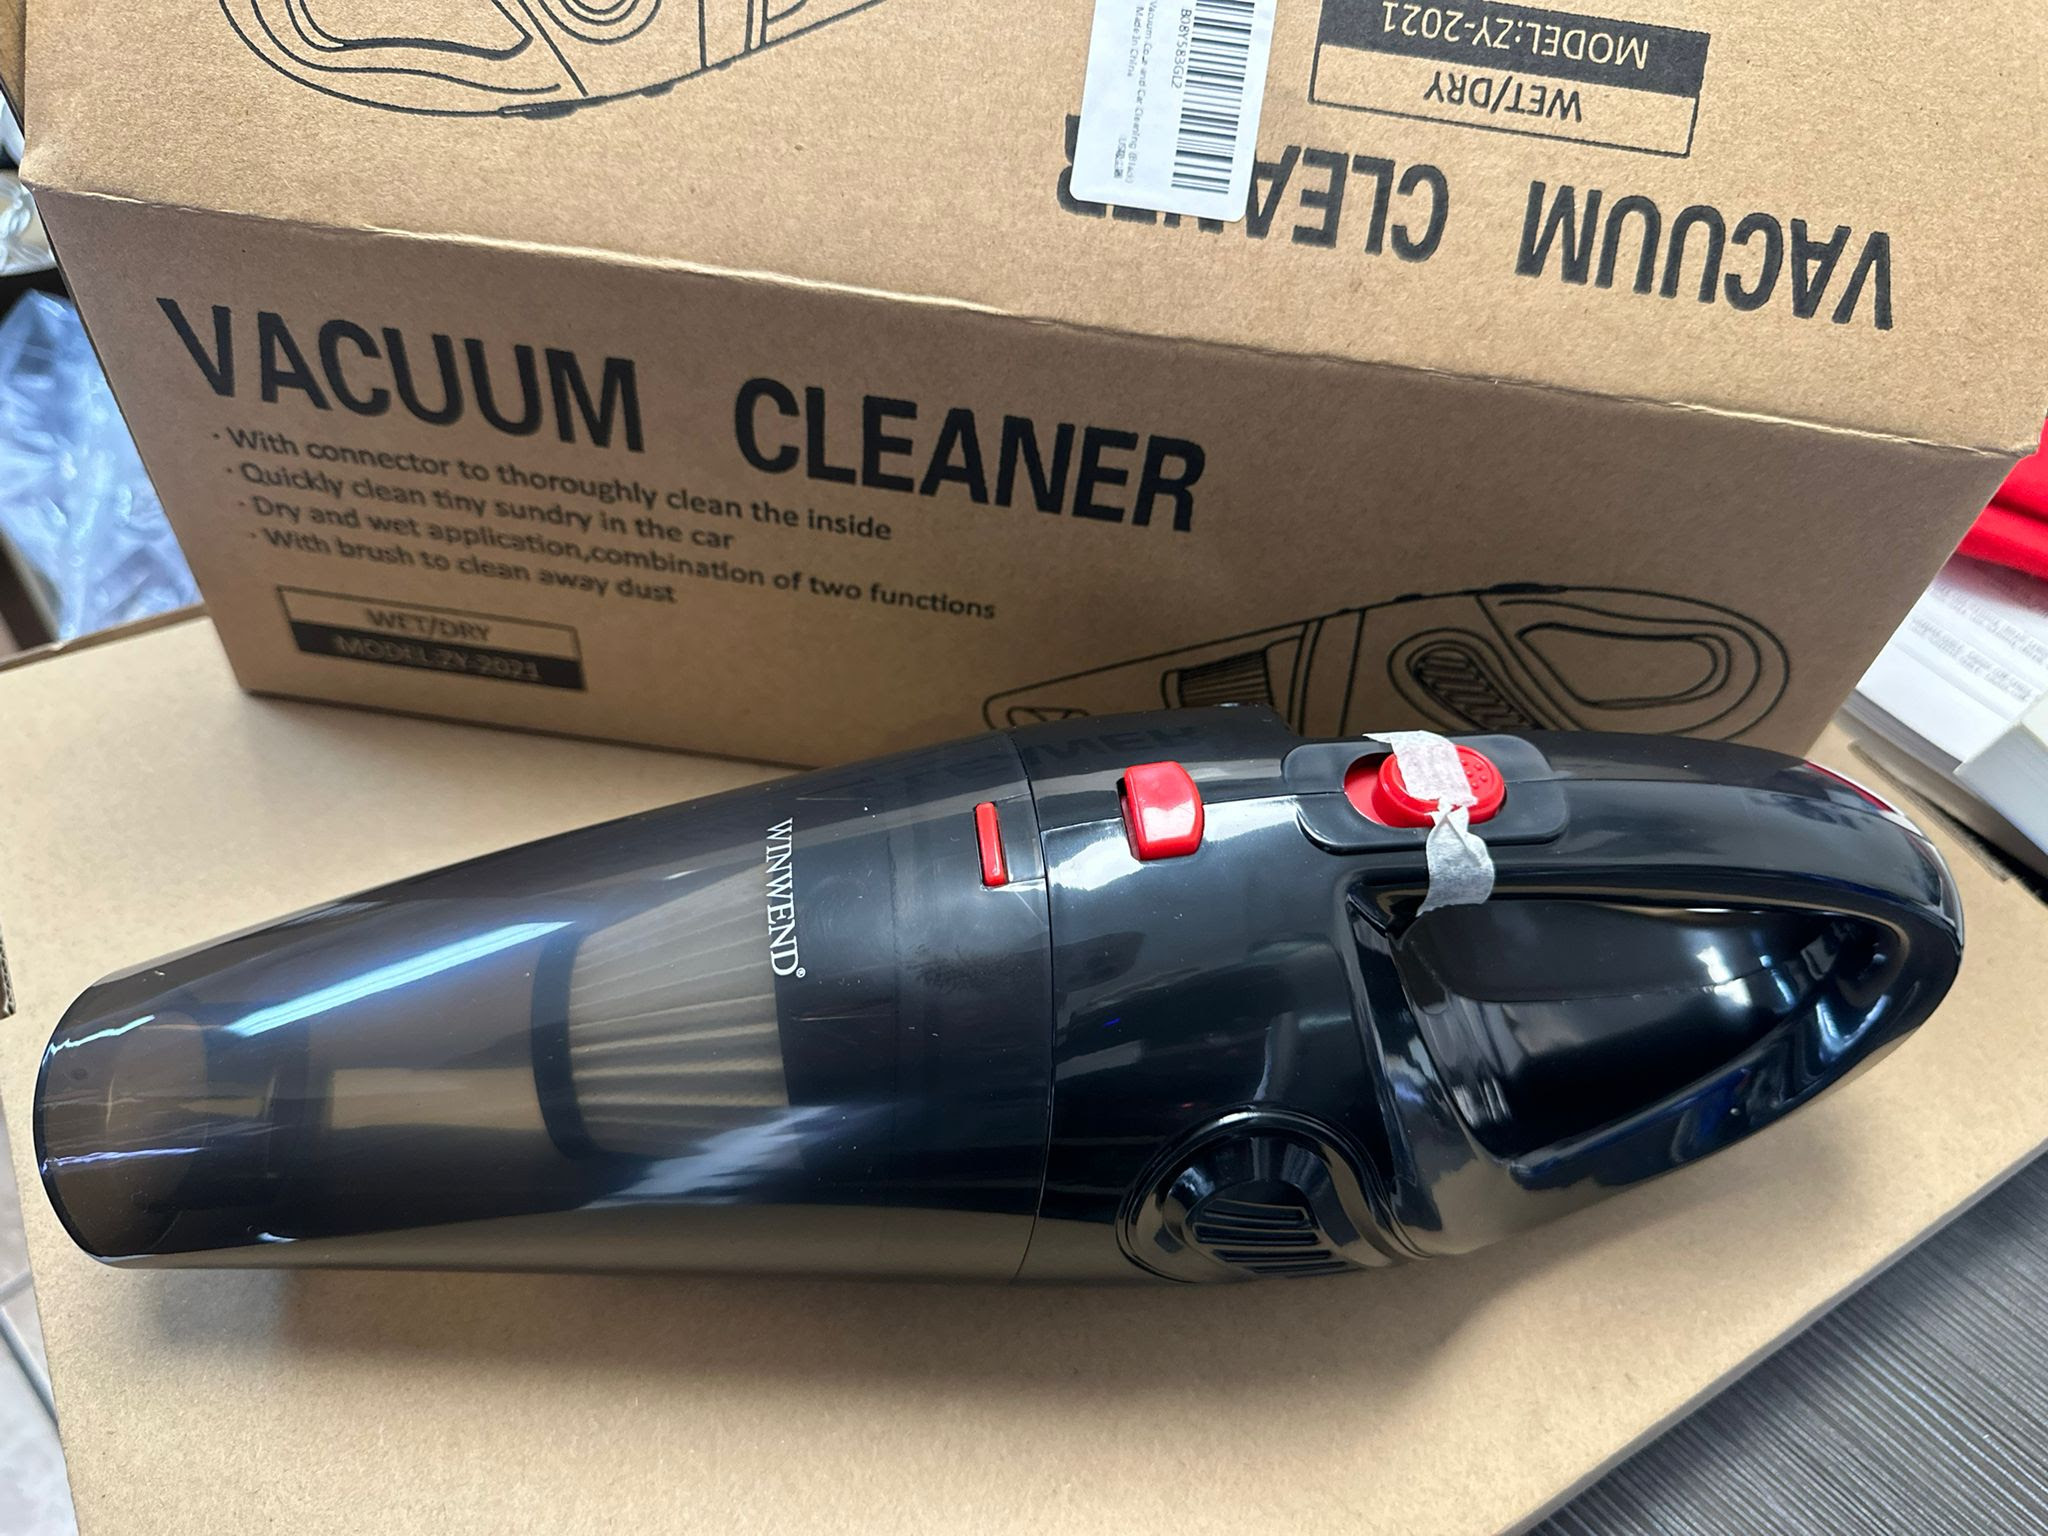 WINWEND Handheld Vacuum Cleaner.